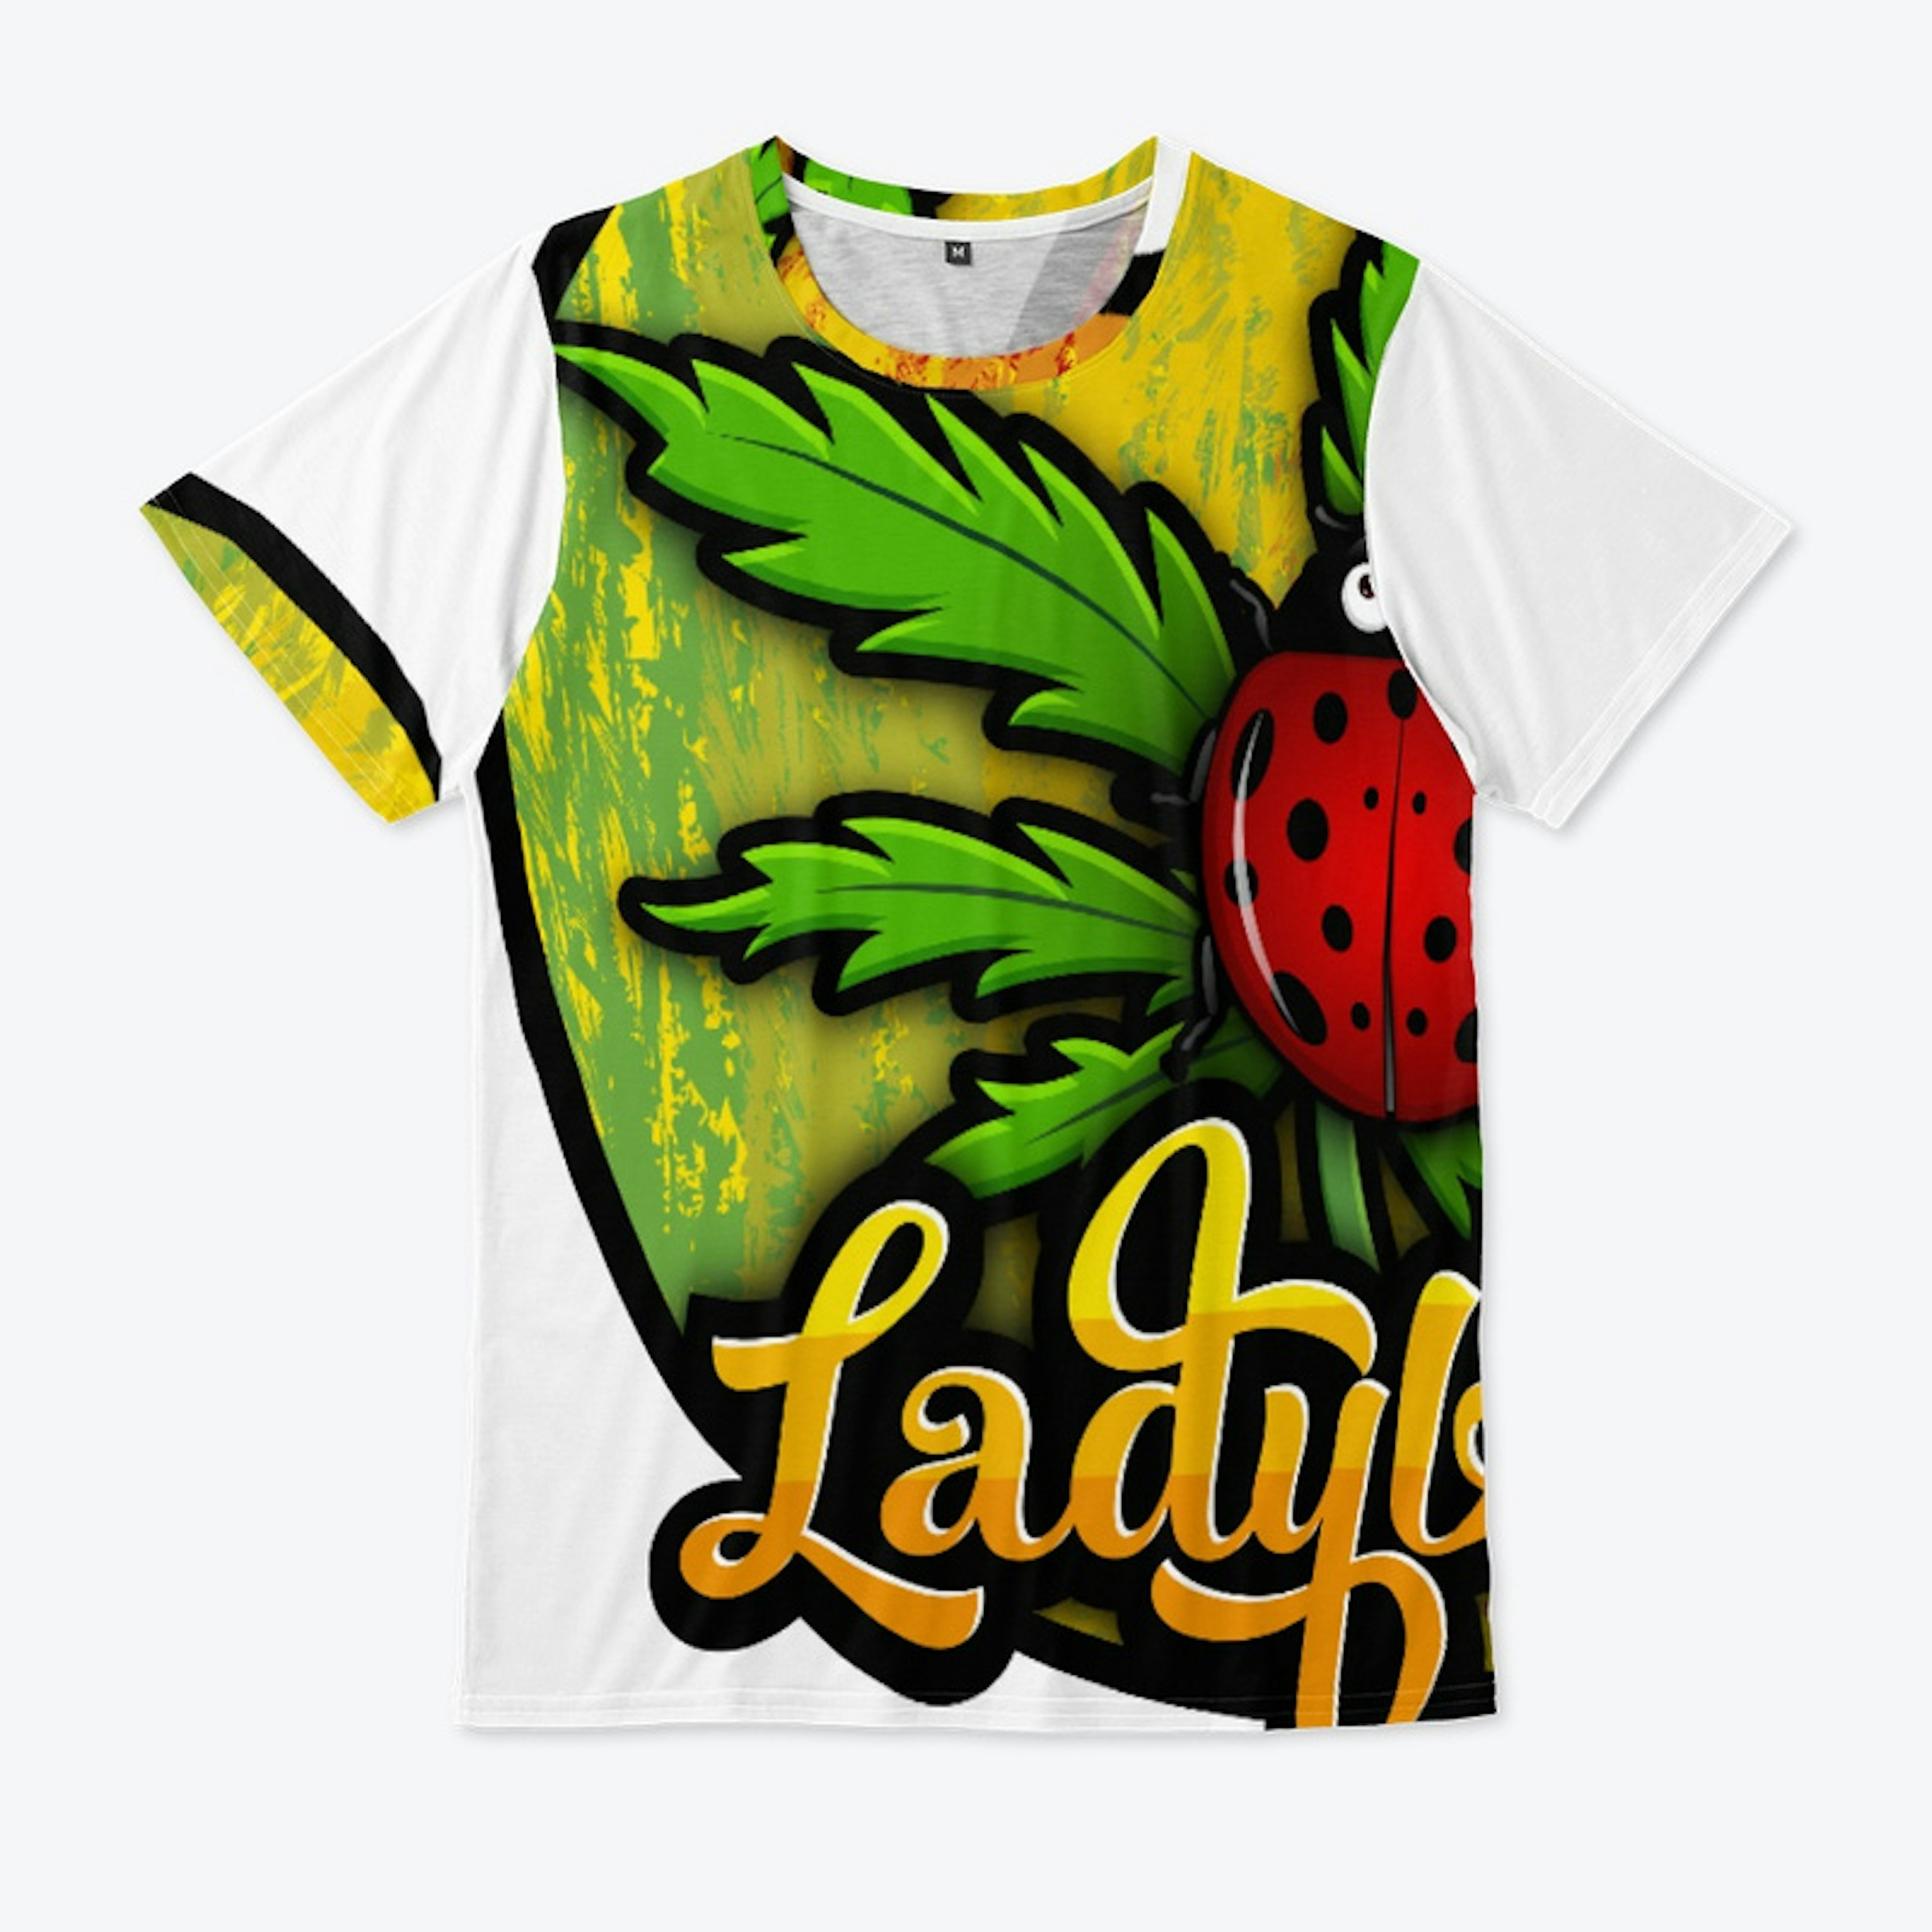 Ladybird Merch